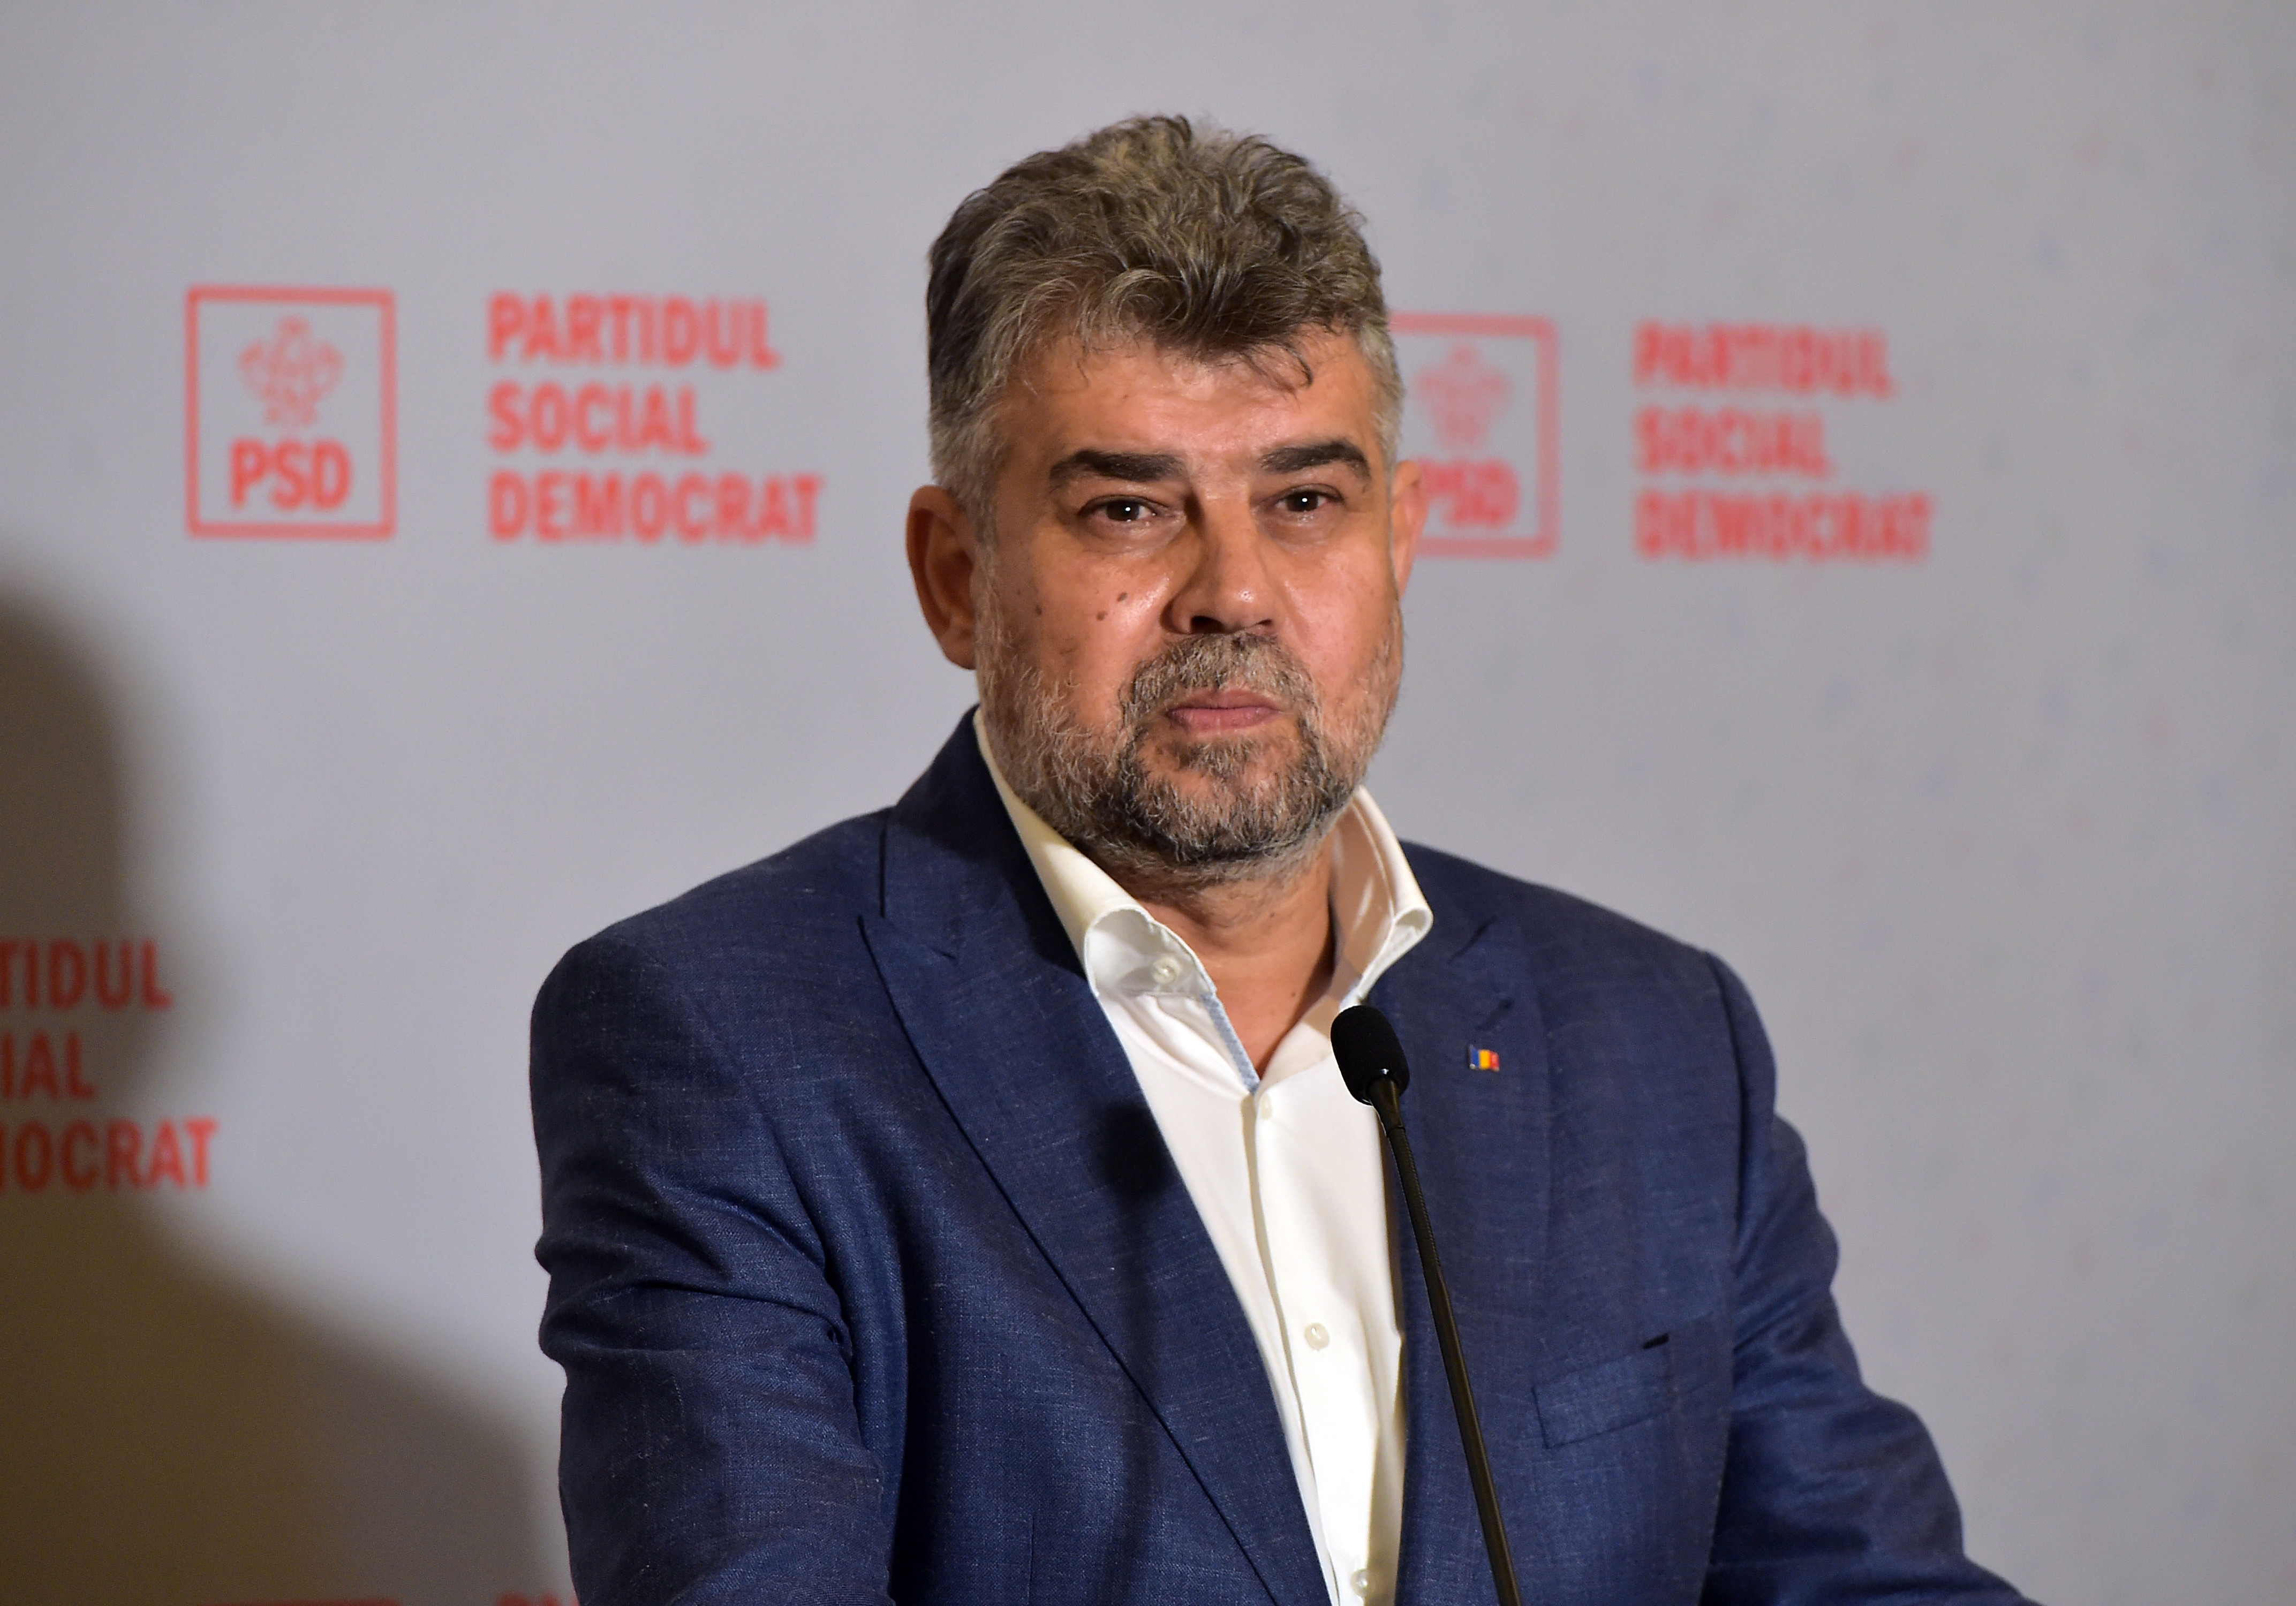 Ciolacu: ”Pachetul social va intra în vigoare la 1 ianuarie 2022”. Ce presupune acesta